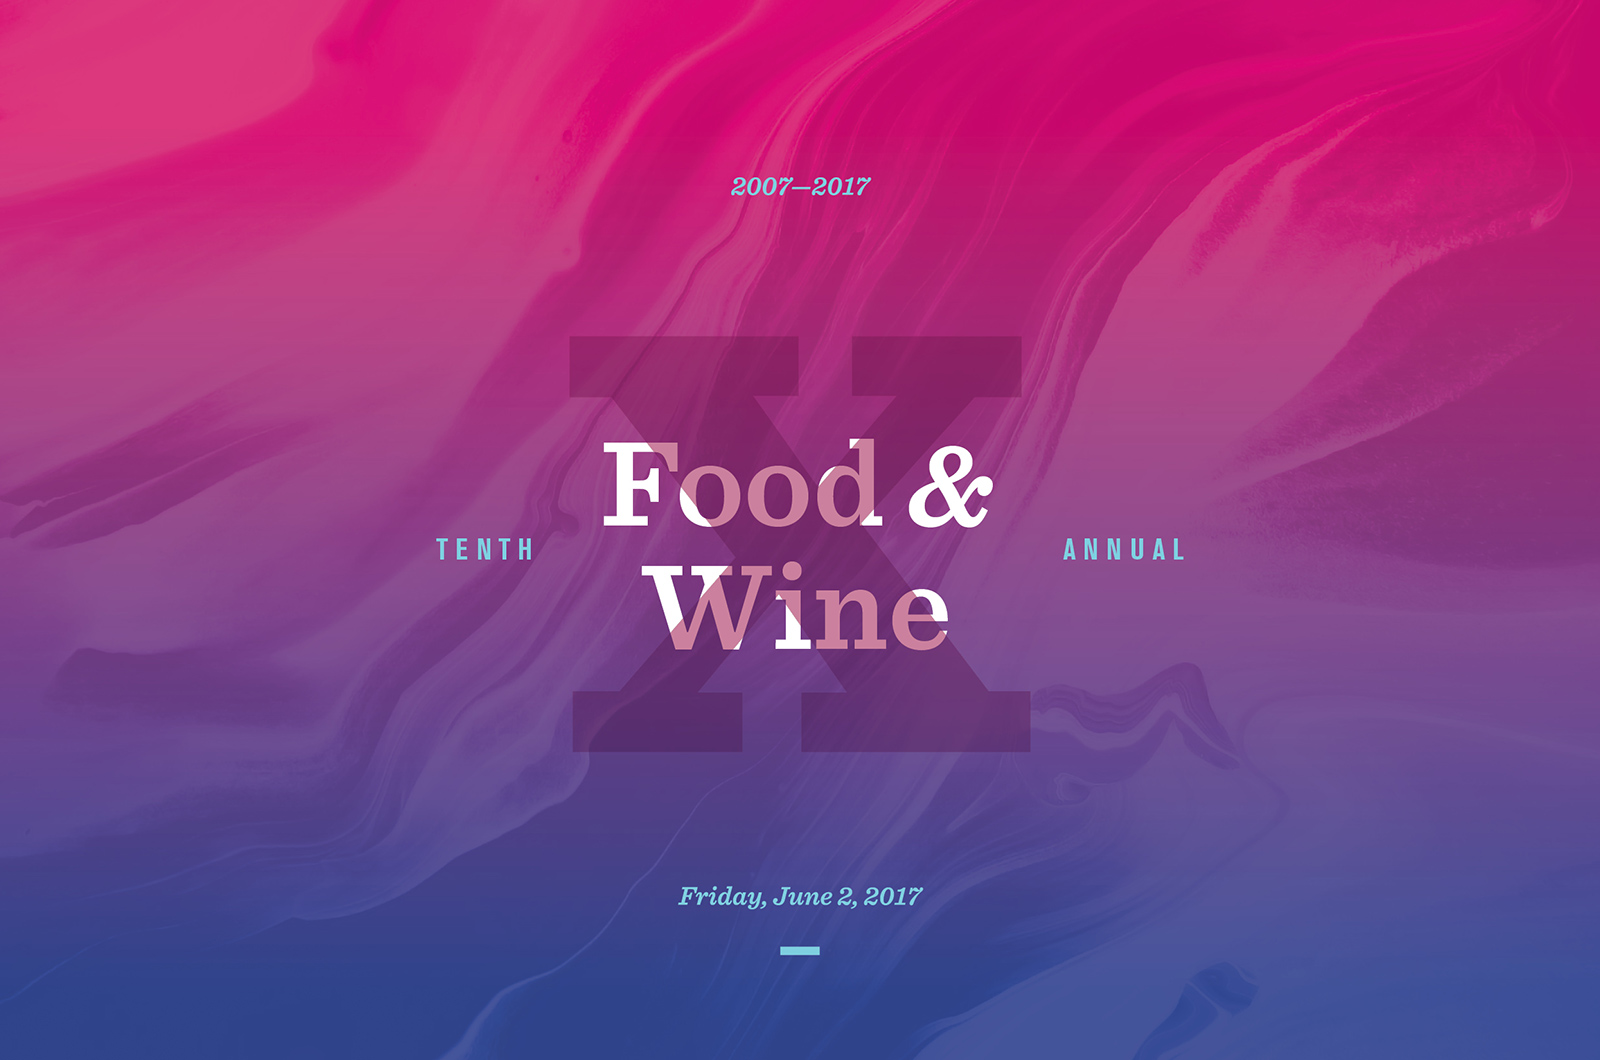 Food & Wine Gala Image